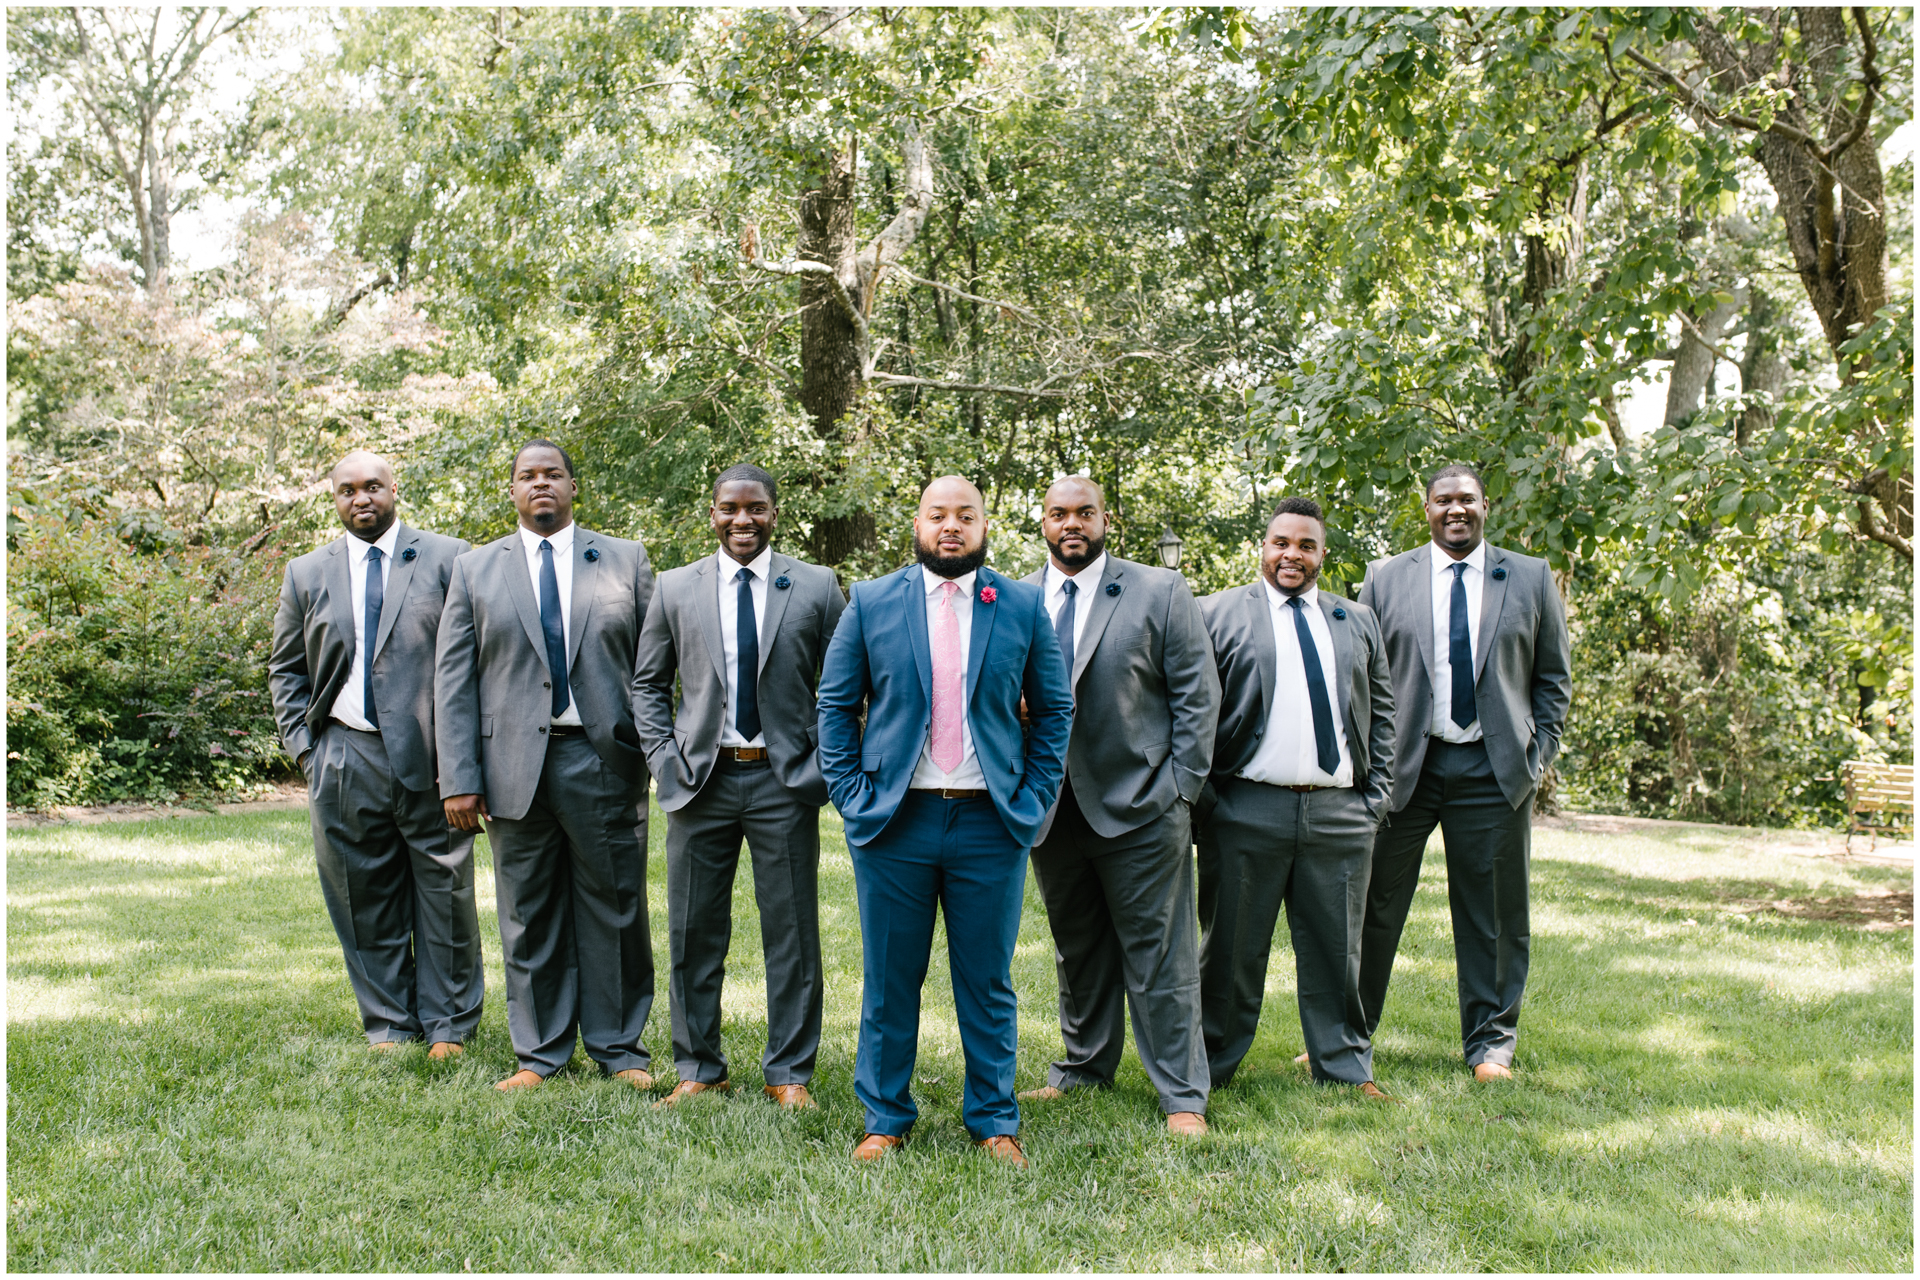 Groomsmen with Groom - mighty ducks - outdoor African America wedding